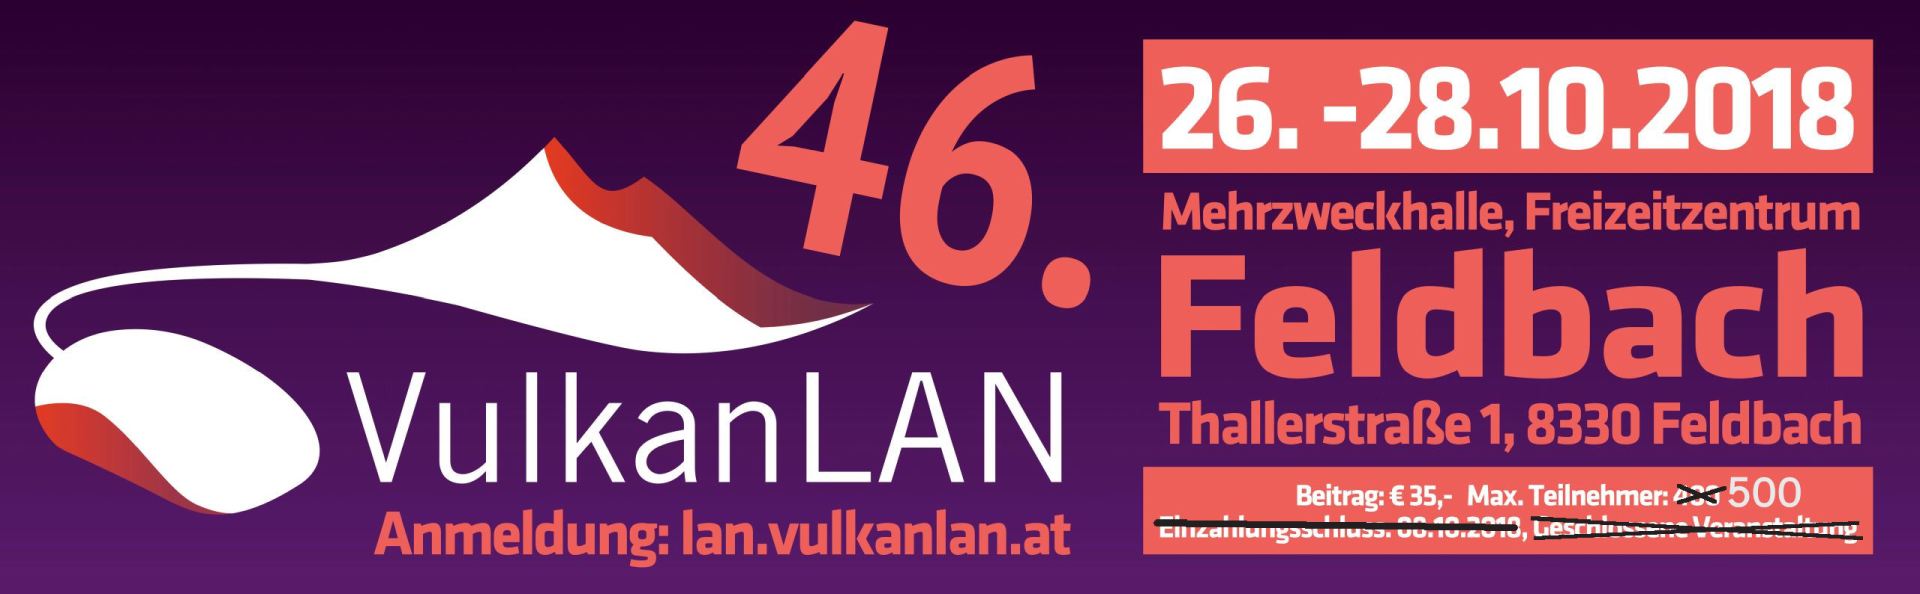 46 VulkanLAN web banner 2560px update